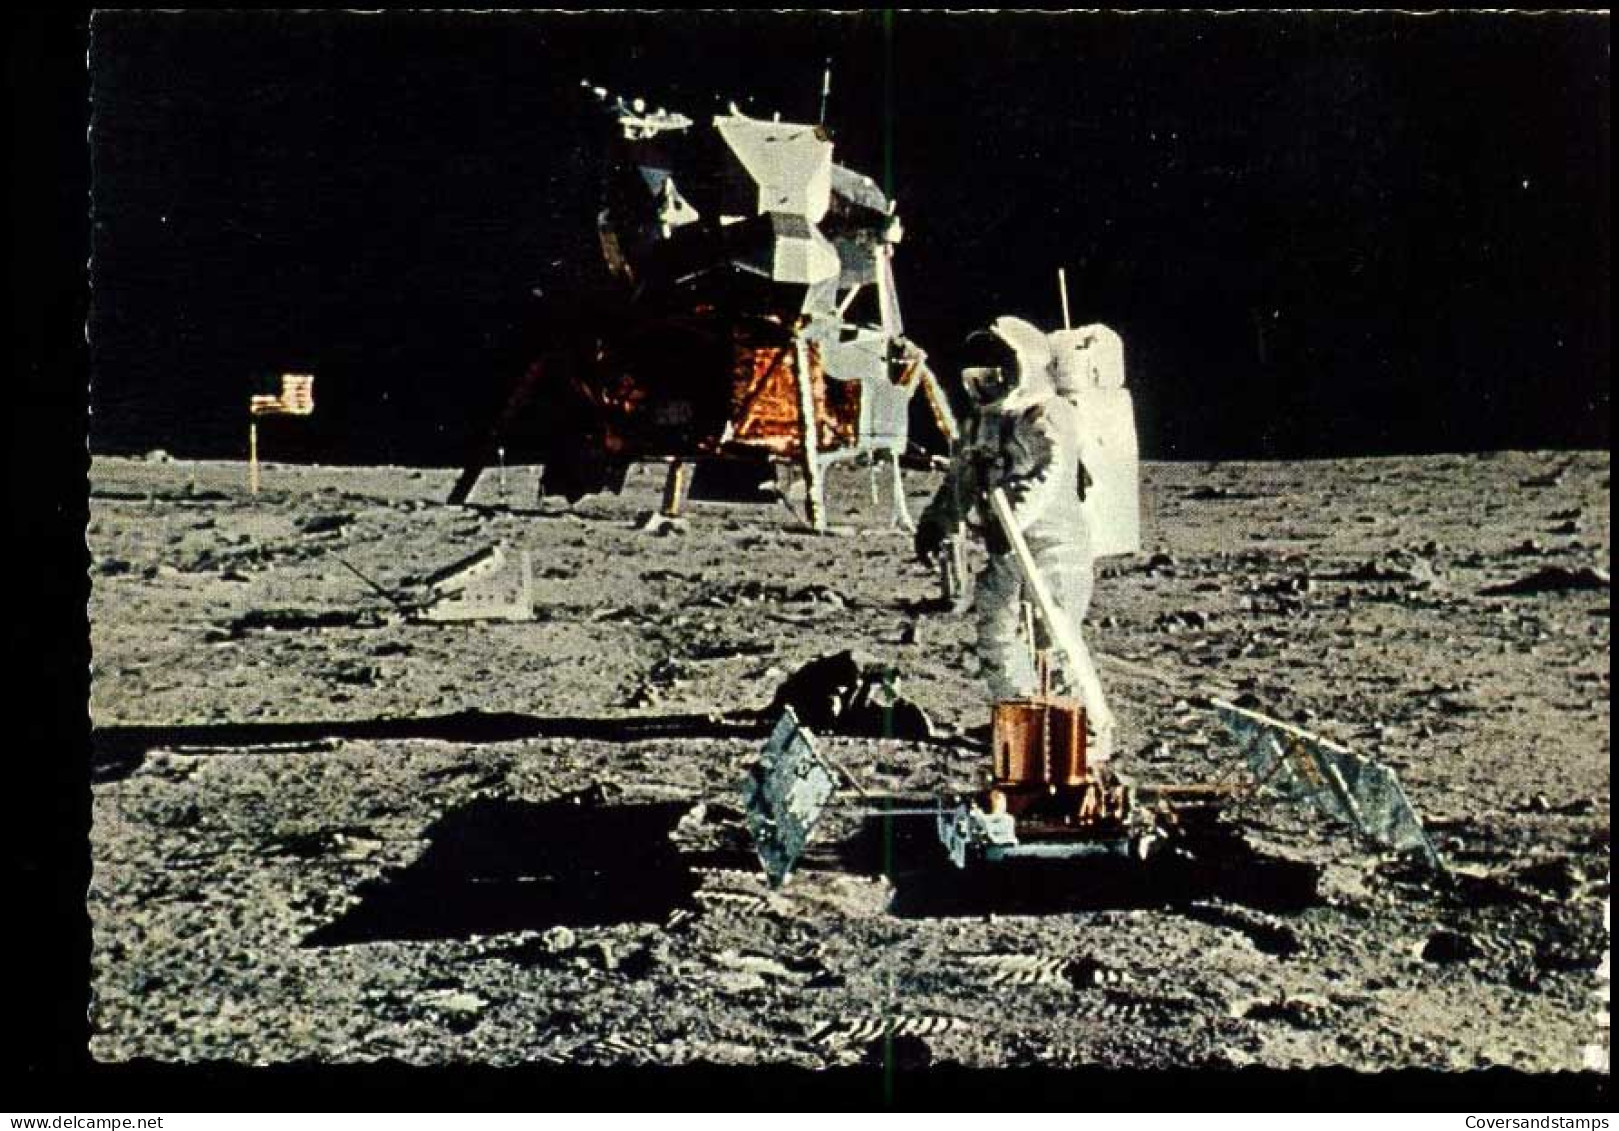 21 Juli 1969 - De Gebeurtenis Van De 20ste Eeuw, Mensen Op De Maan - Espace